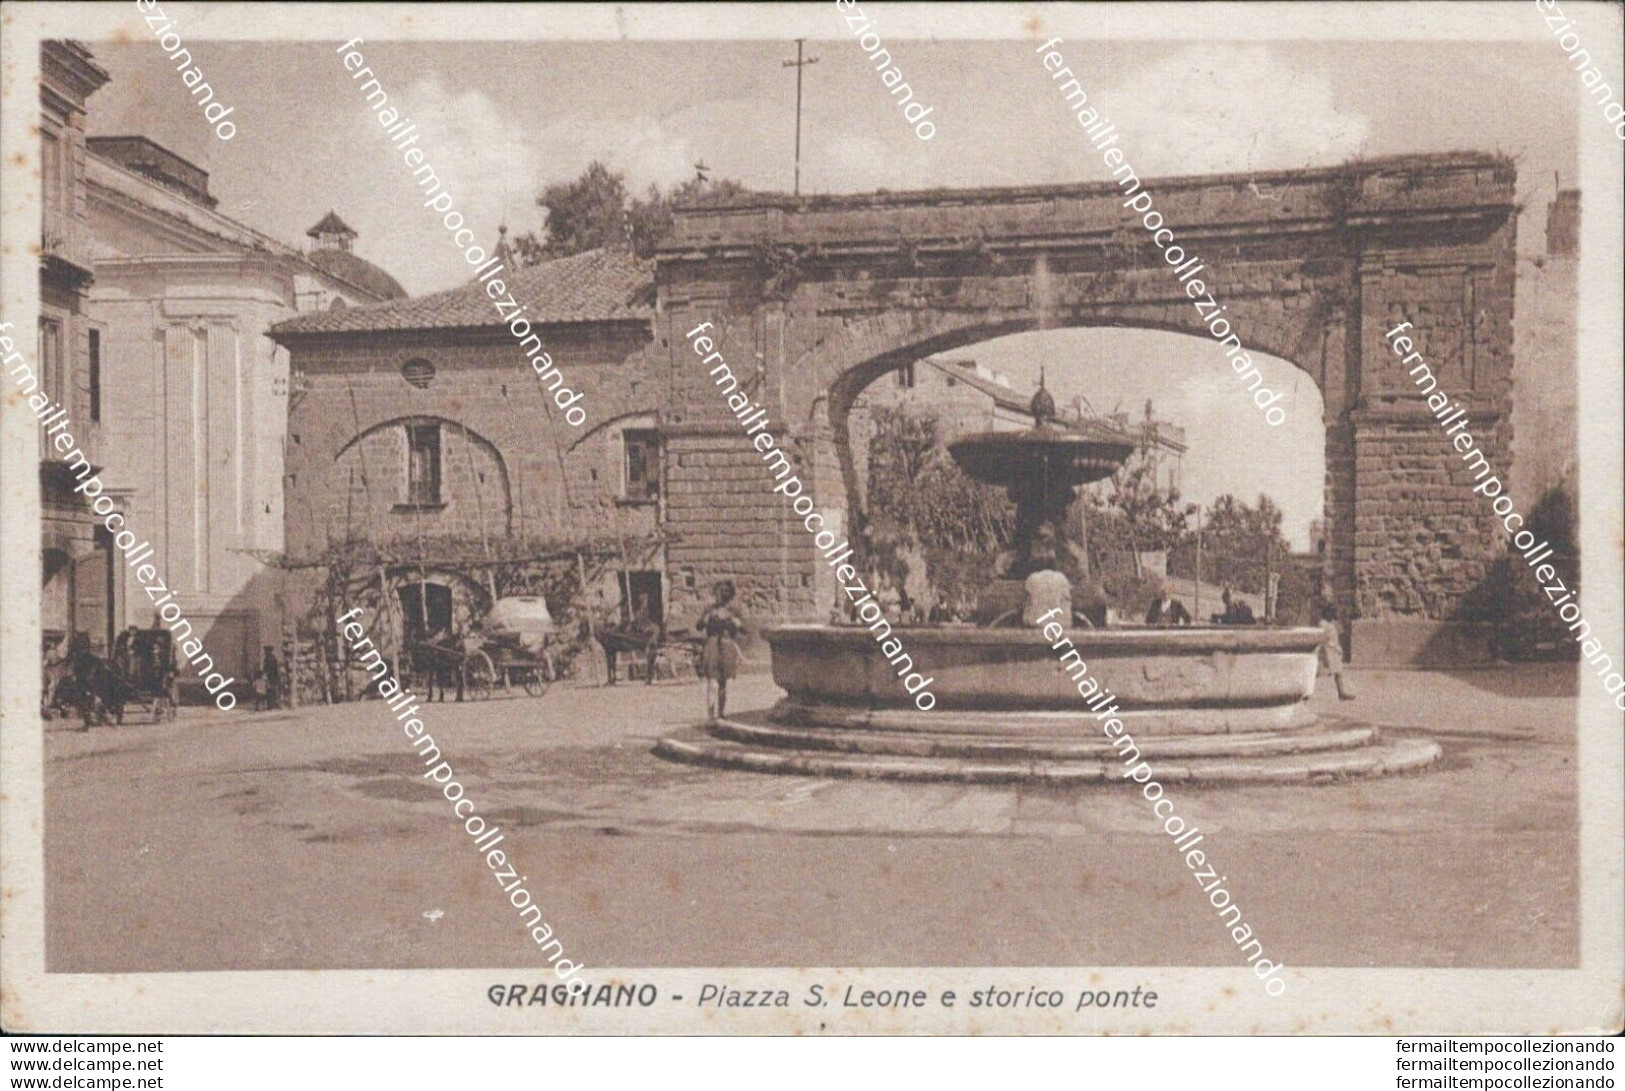 At61 Cartolina Gragnano Piazza S.leone E Storico Ponte 1939 Provincia Di Napoli - Napoli (Naples)